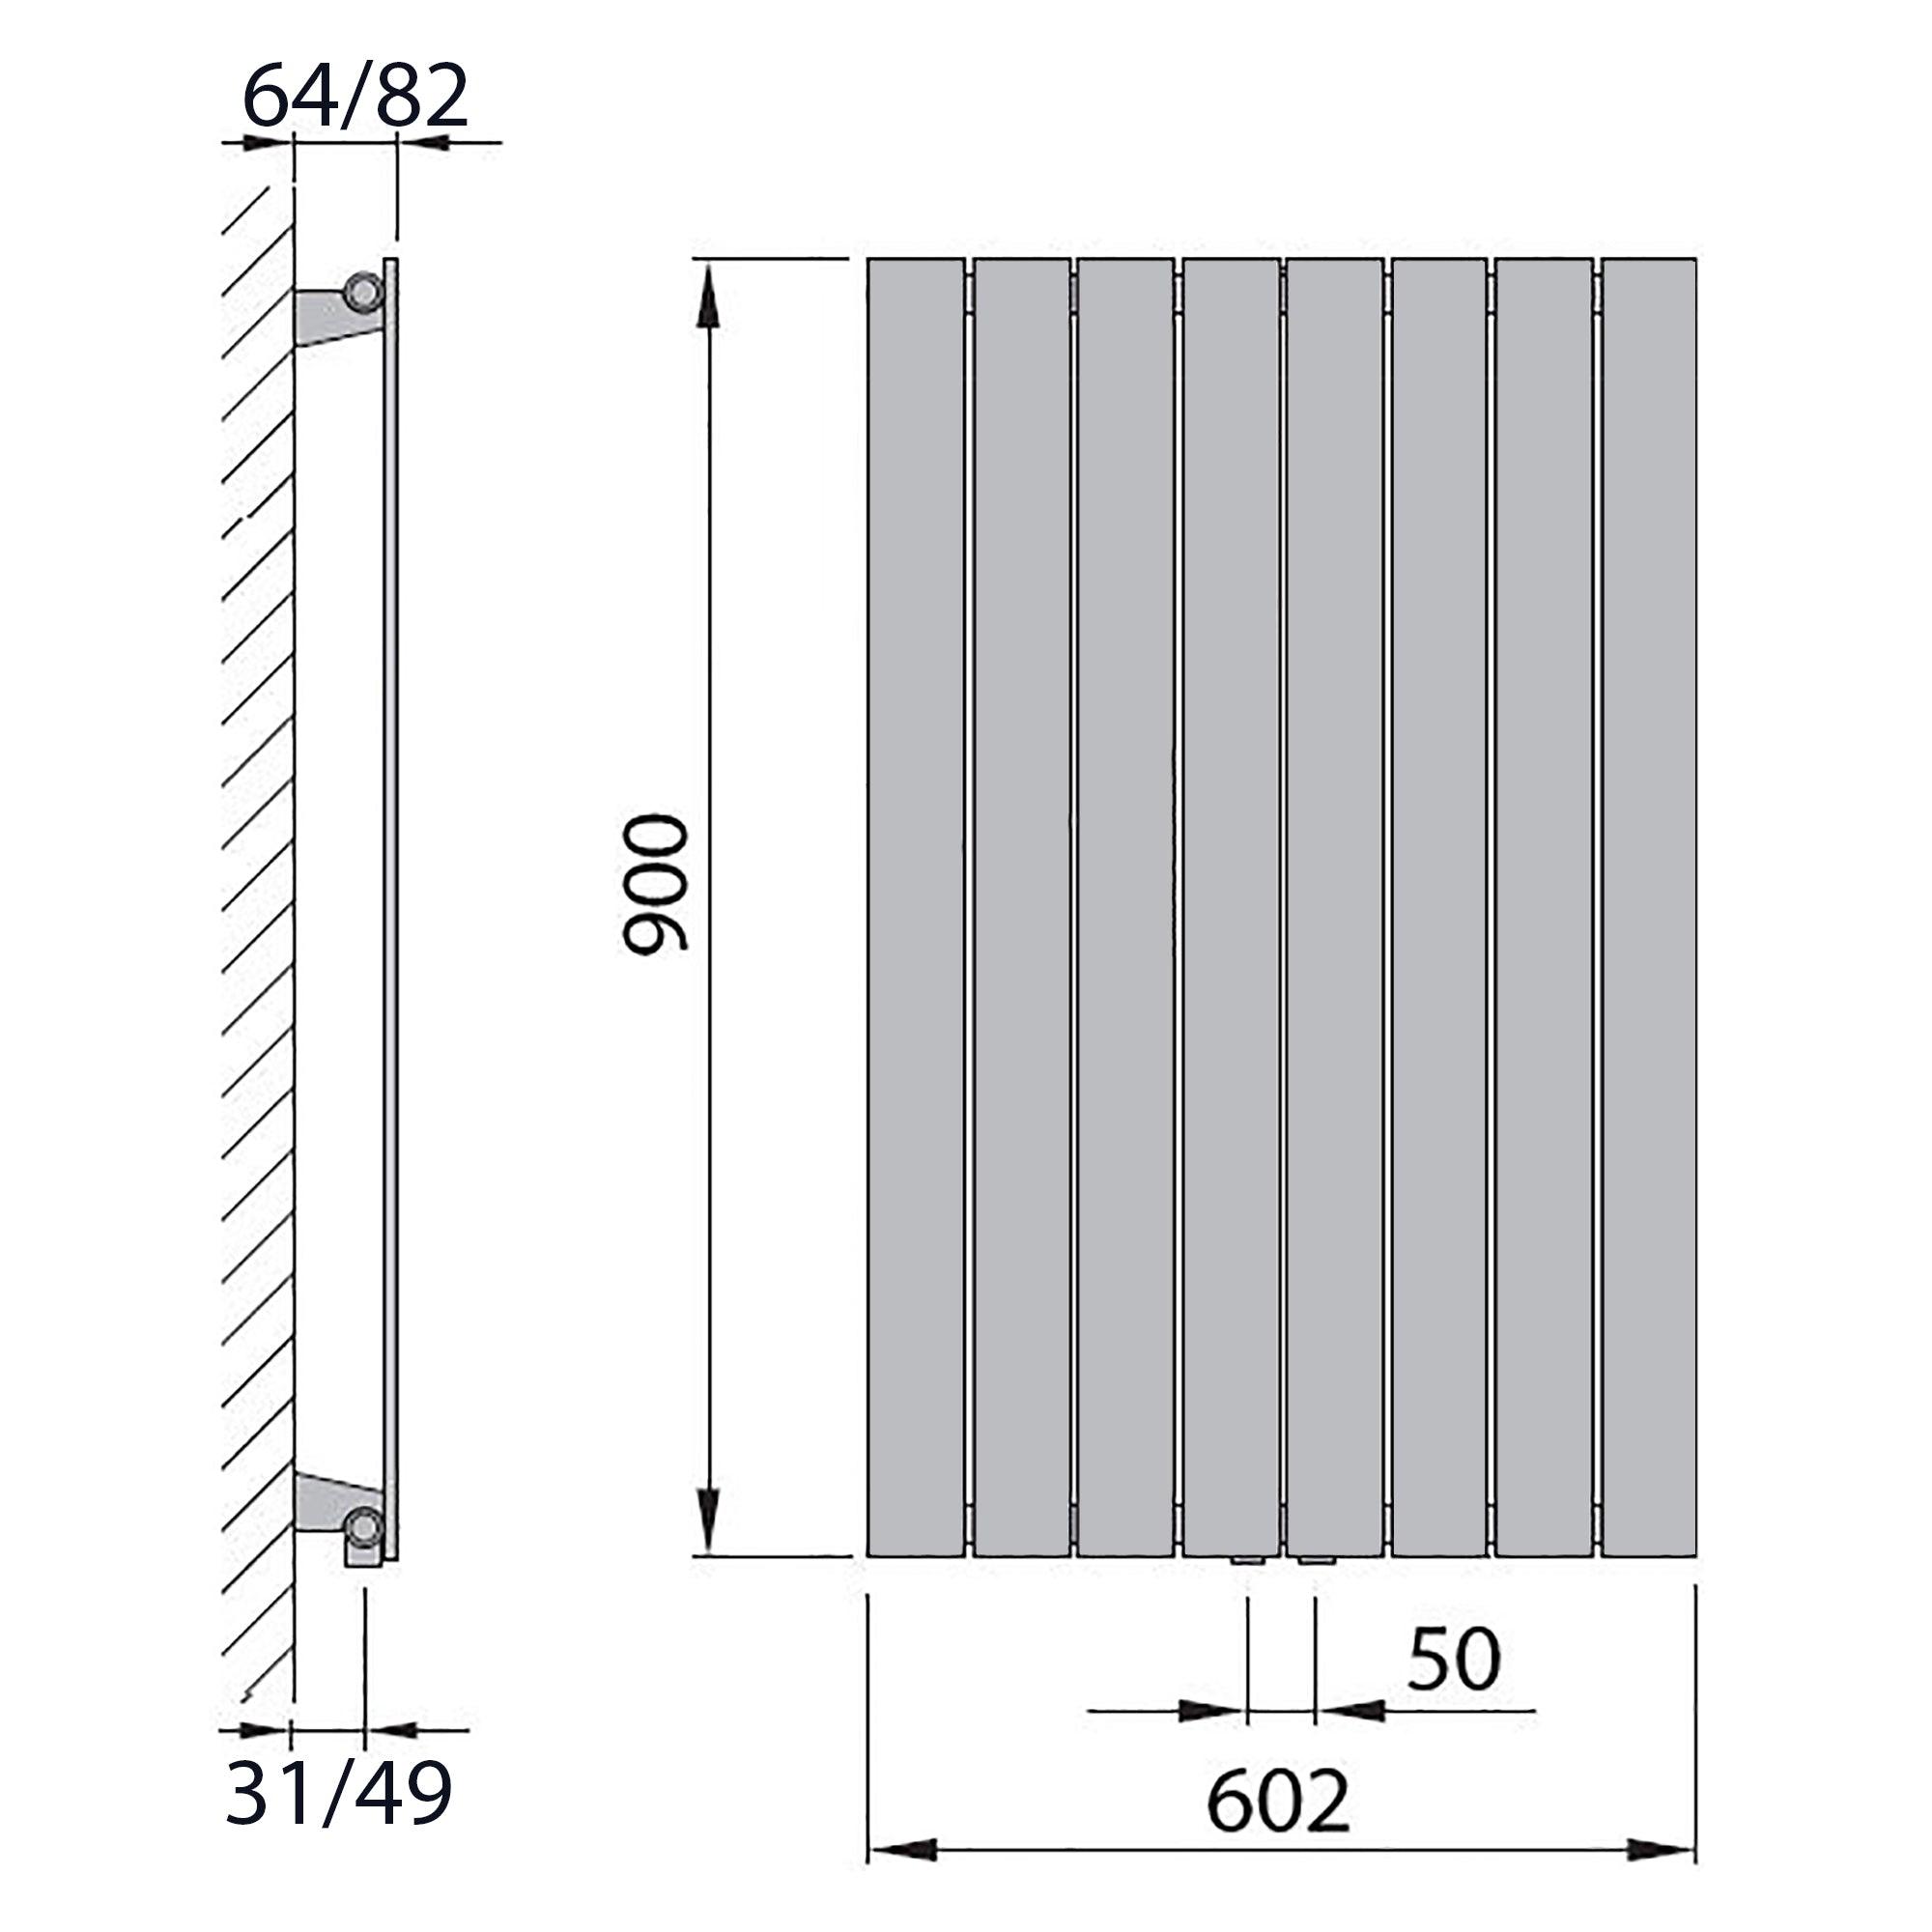 Design Paneelheizkörper vertikal 900 x 602 weiß Heizkörper Badheizkörper flach Badezimmer Heizung technische Zeichnung - heizkoerper.shop